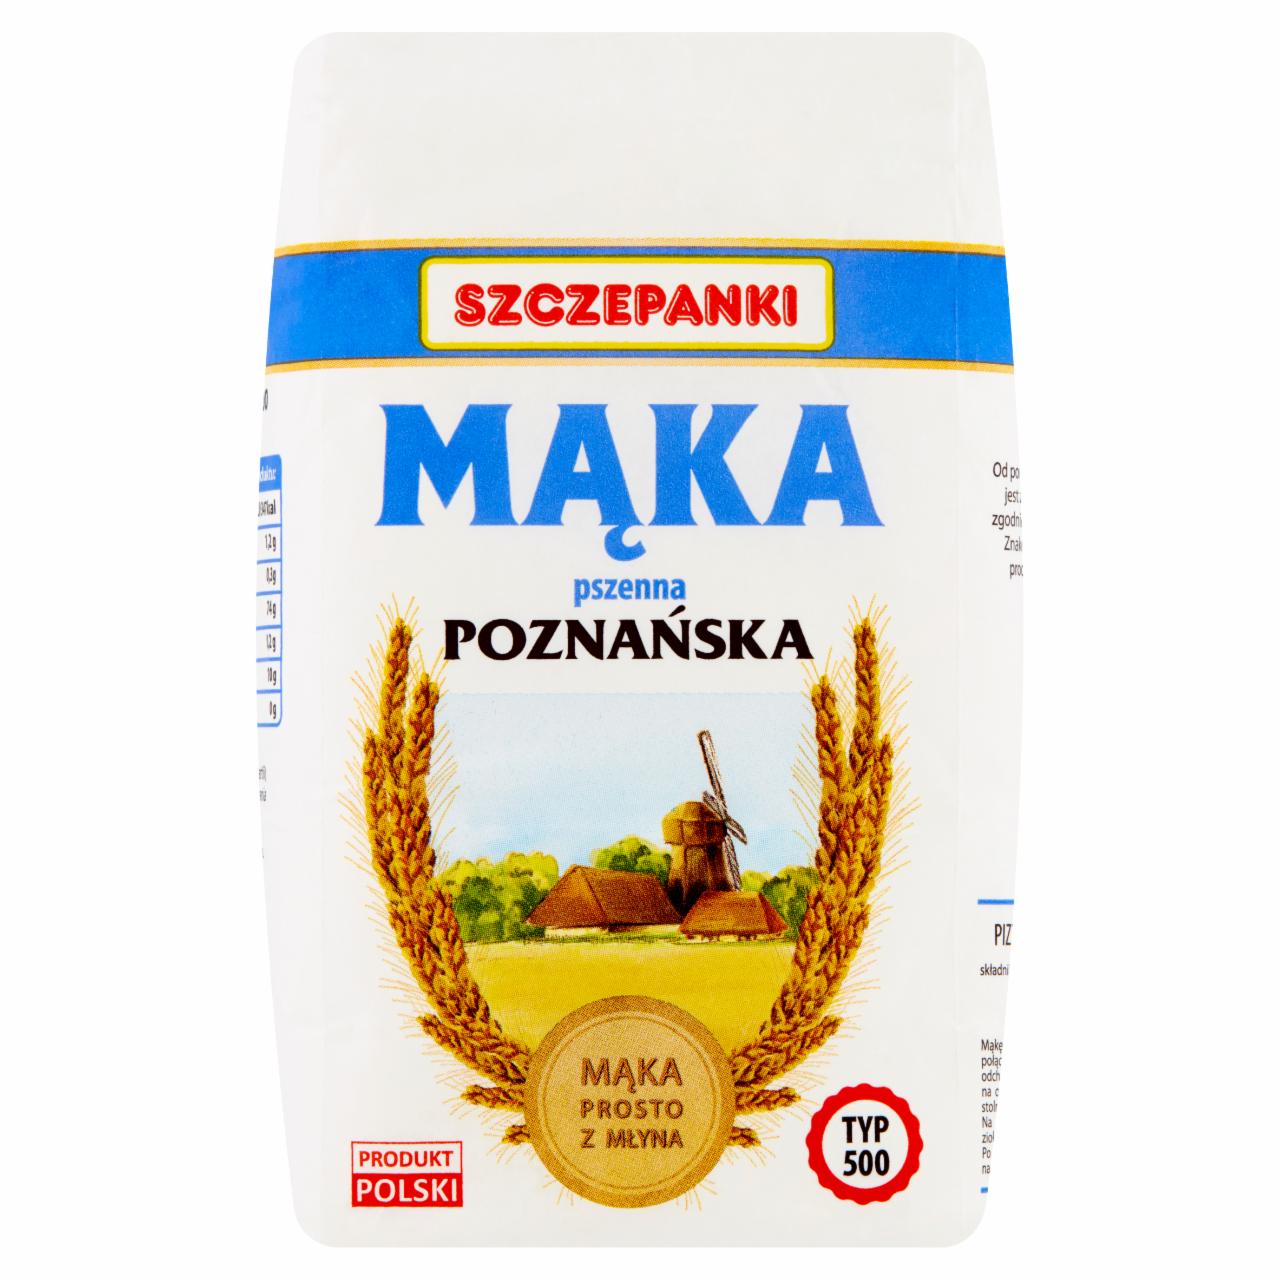 Zdjęcia - Szczepanki Mąka pszenna poznańska typ 500 1 kg